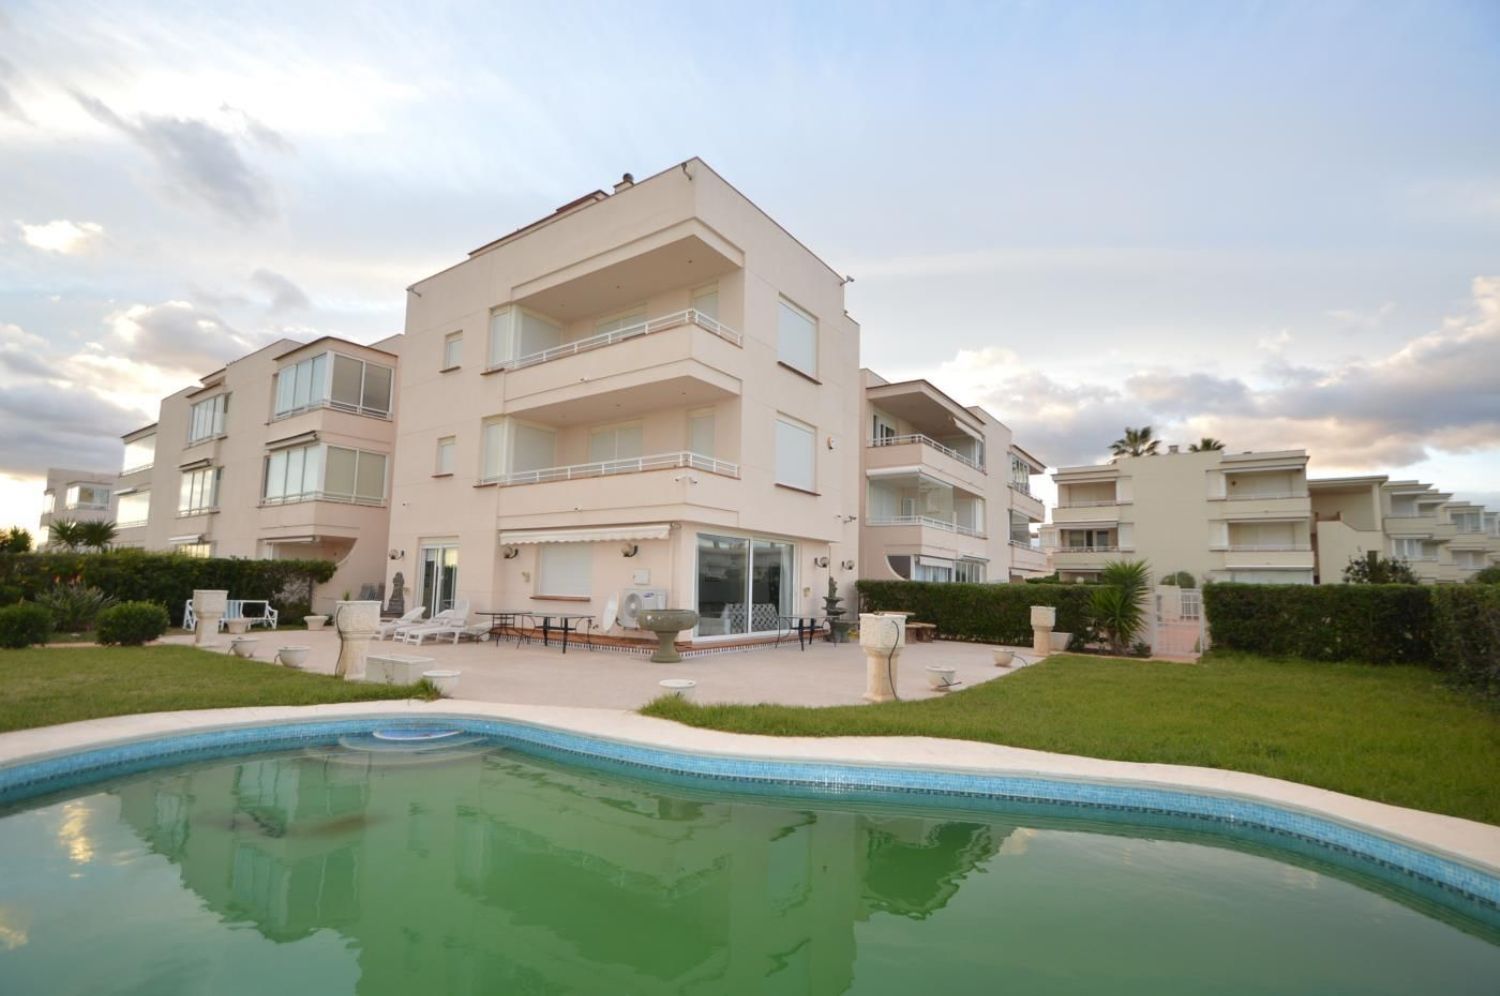 Casa en venta en primera línea de mar en la Zona Costa norte, en Vinaròs